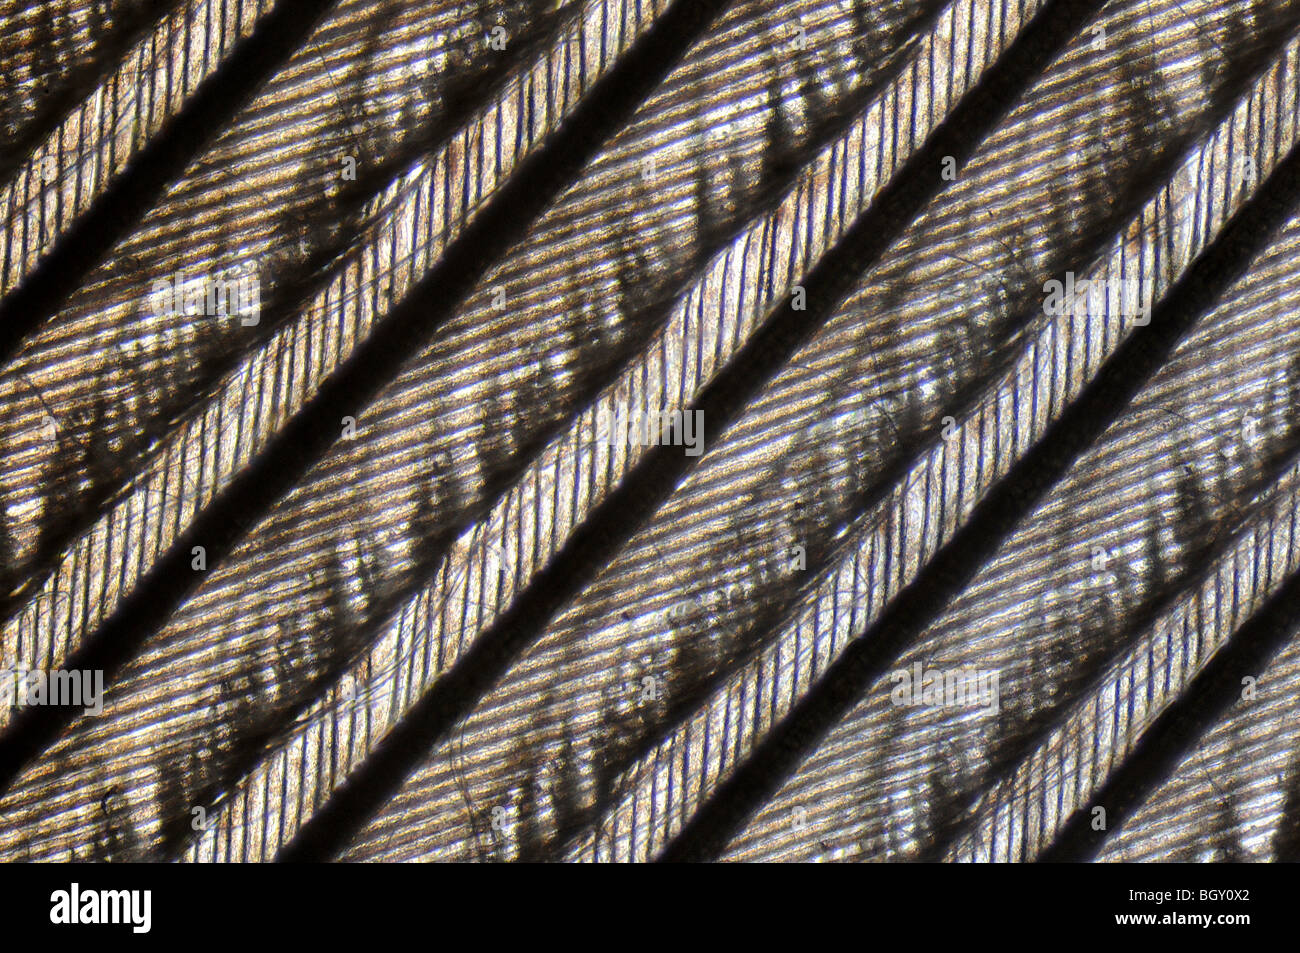 Imagen microscópica de los dibujos hechos por una pluma de paloma Foto de stock